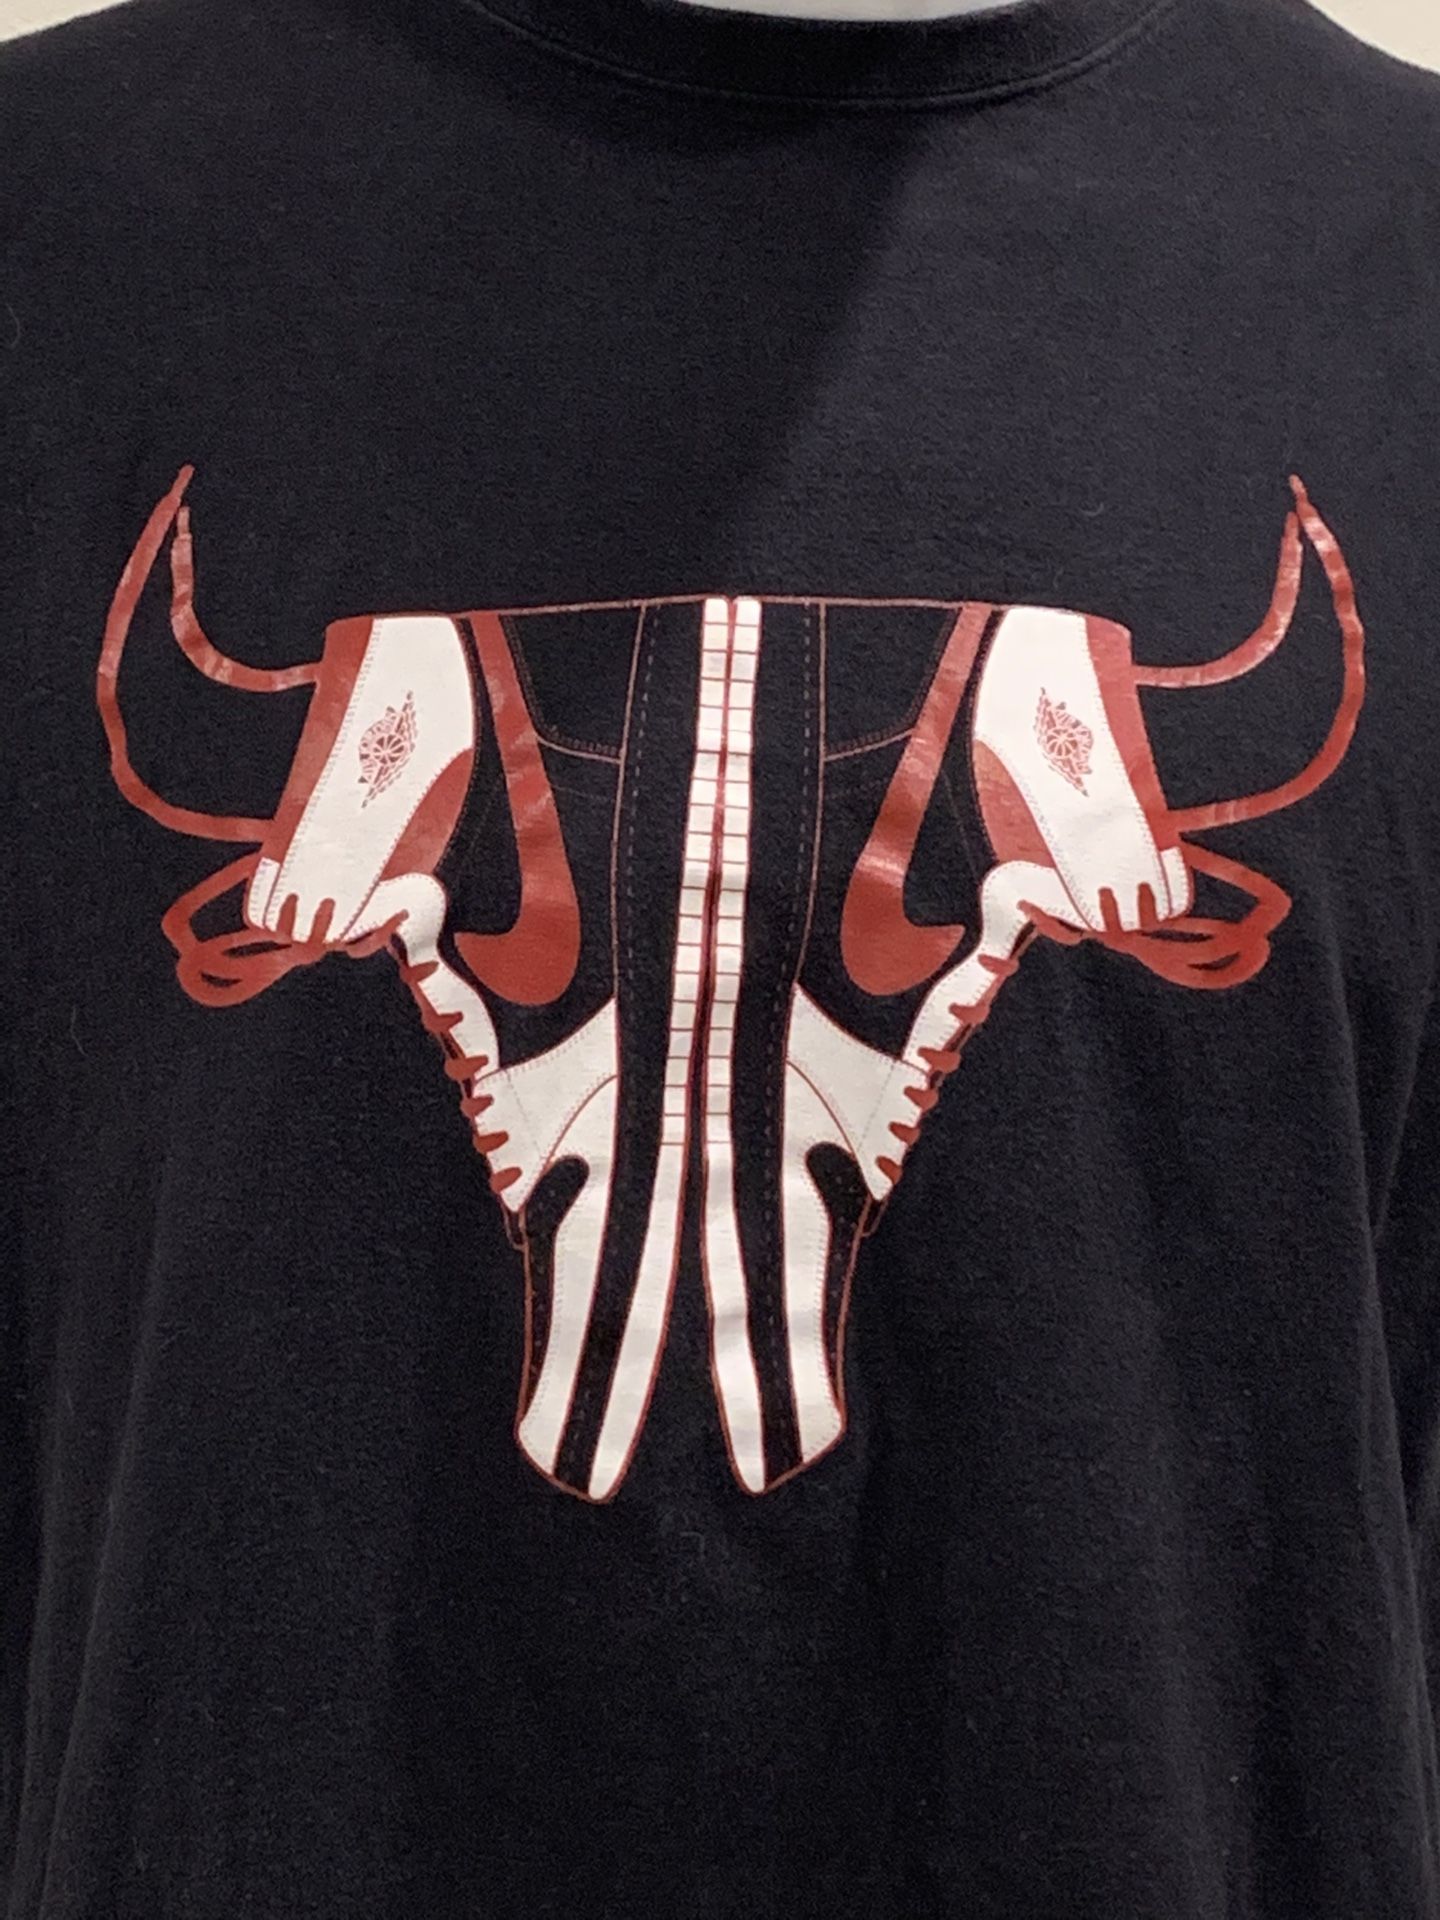 Jordan 1 Bulls T-Shirt XL